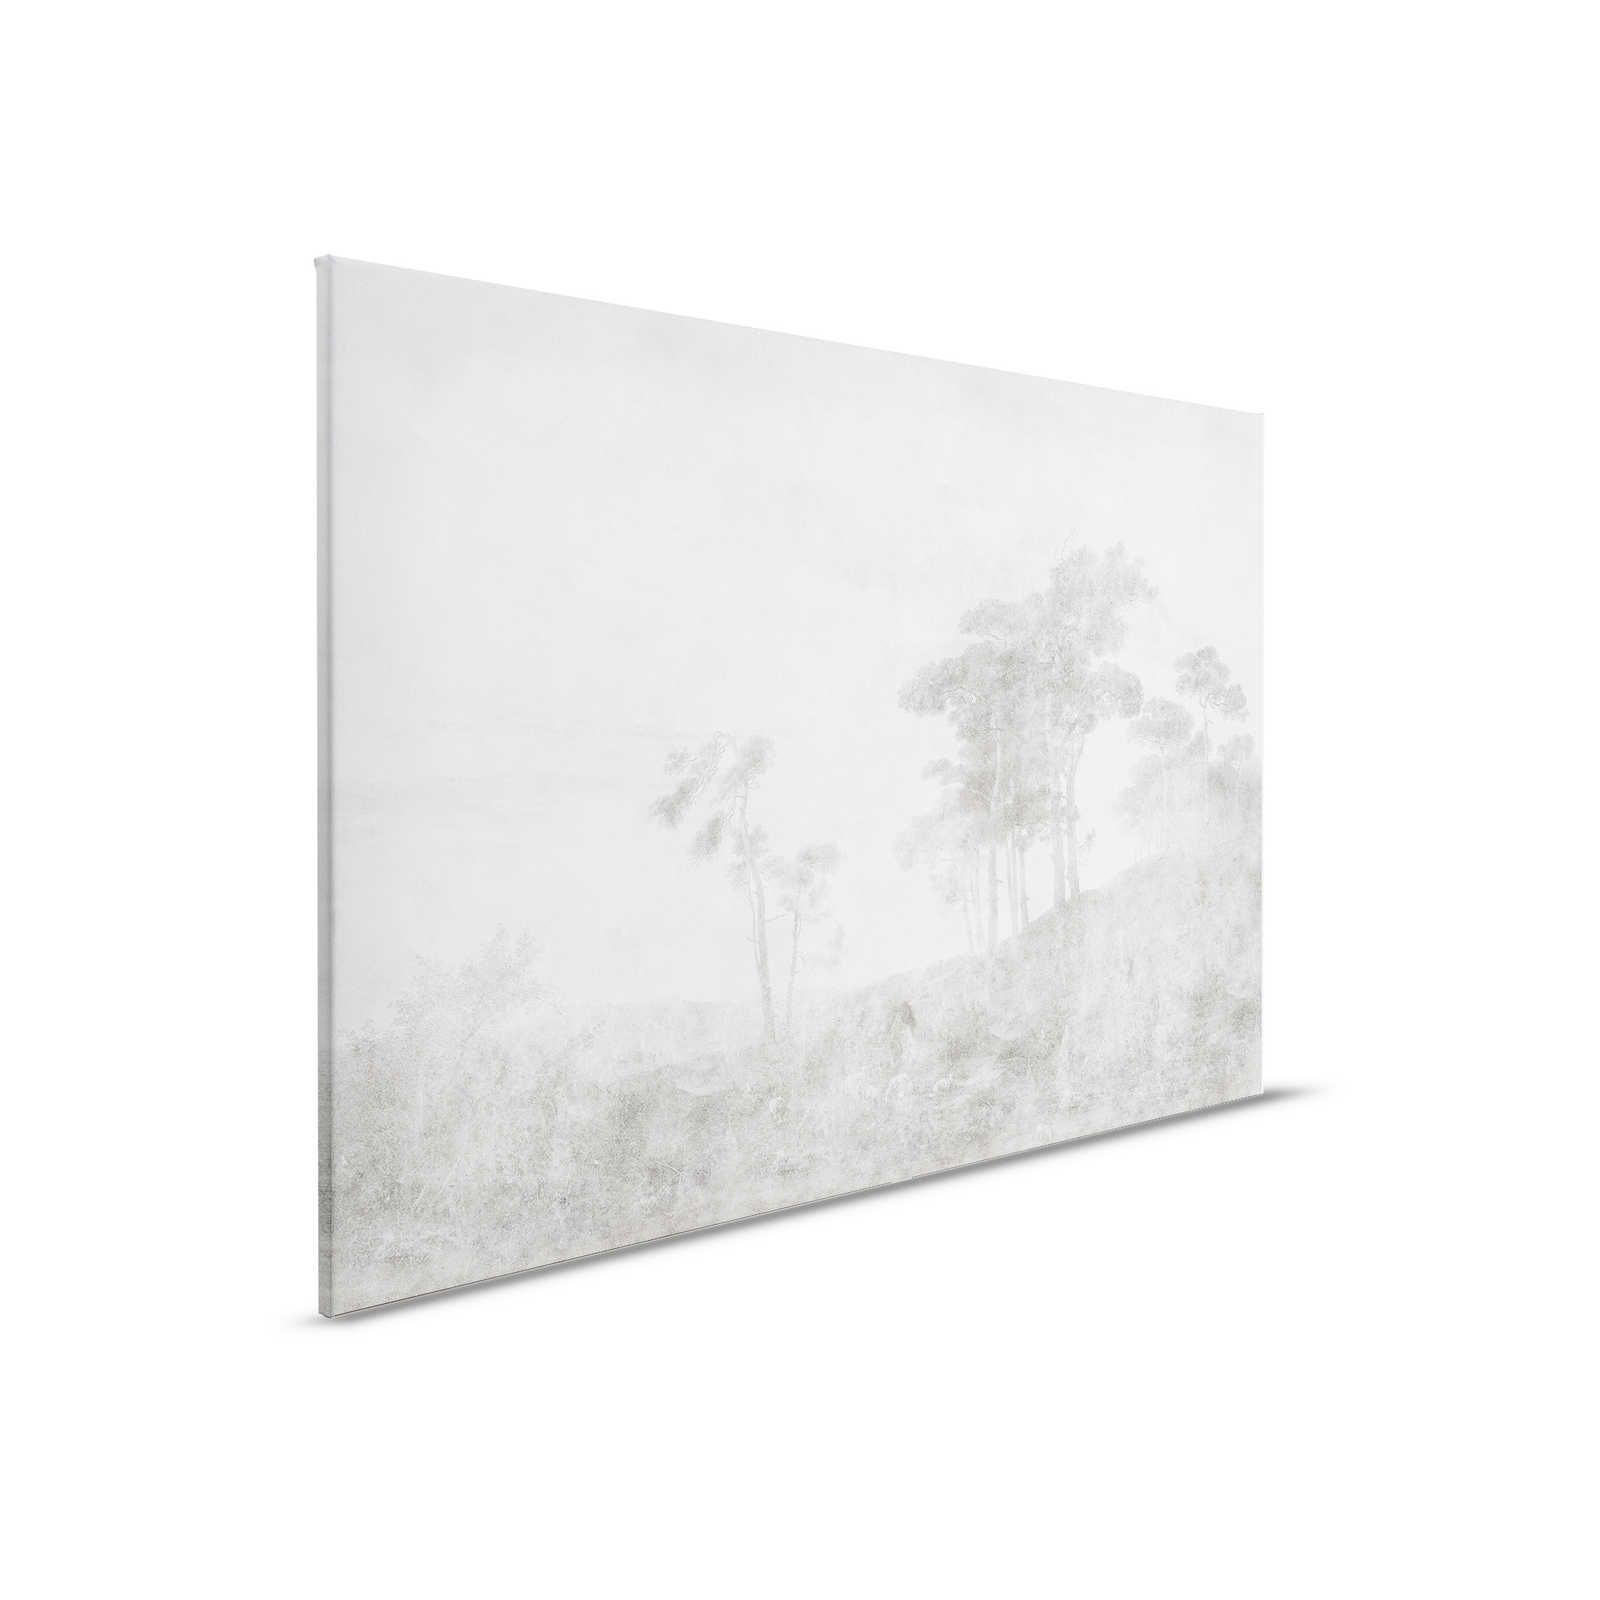 Romantic Grove 2 - Paesaggio dipinto su tela in stile vintage - 0,90 m x 0,60 m
